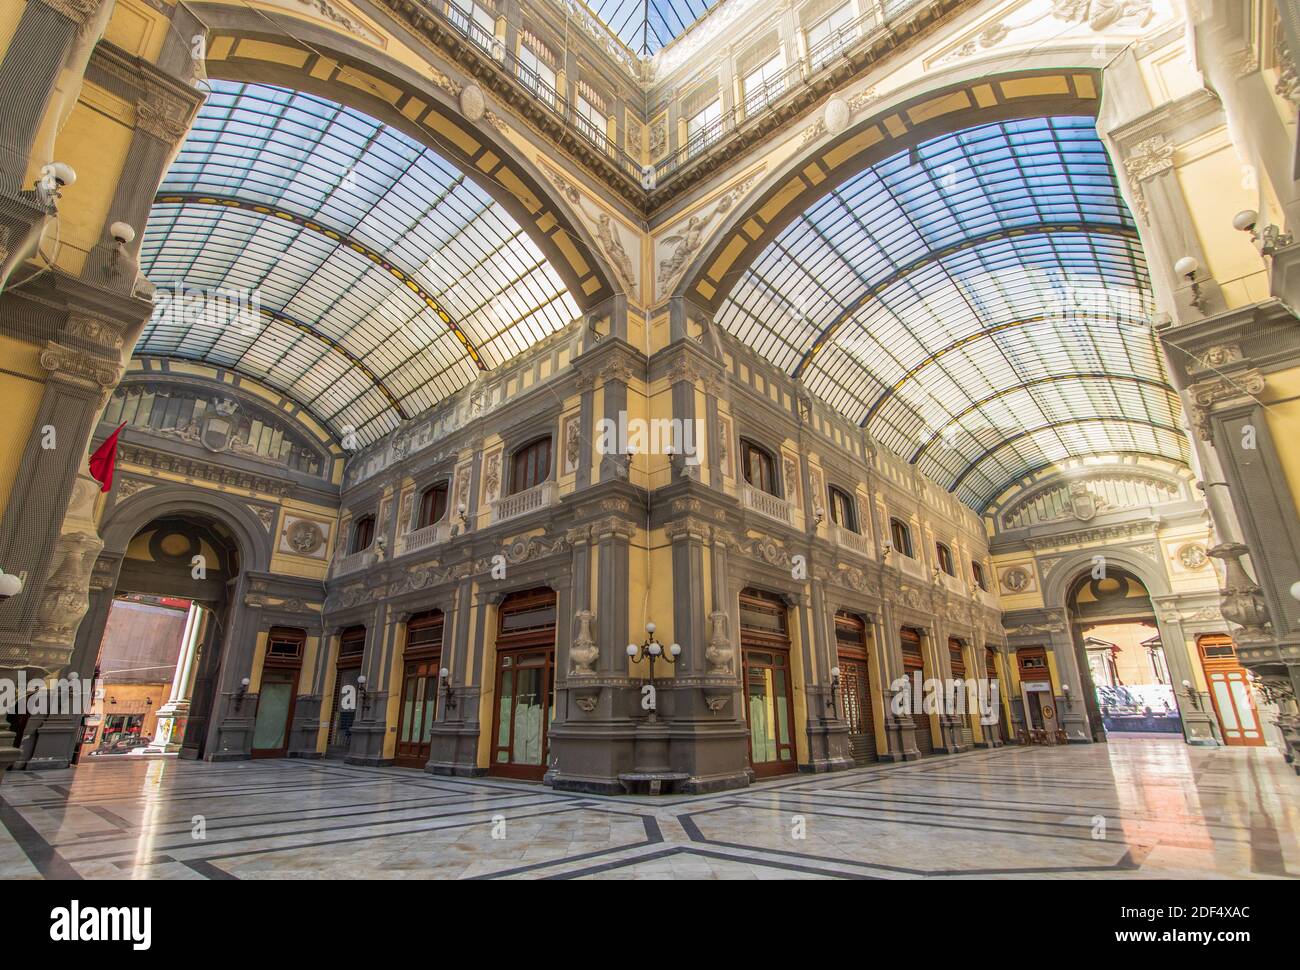 Die Galleria Principe di Napoli, eine öffentliche Einkaufsgalerie aus dem Jahr 1887, ist Teil des UNESCO-Weltkulturerbes Neapel. Hier insbesondere die Innenräume Stockfoto